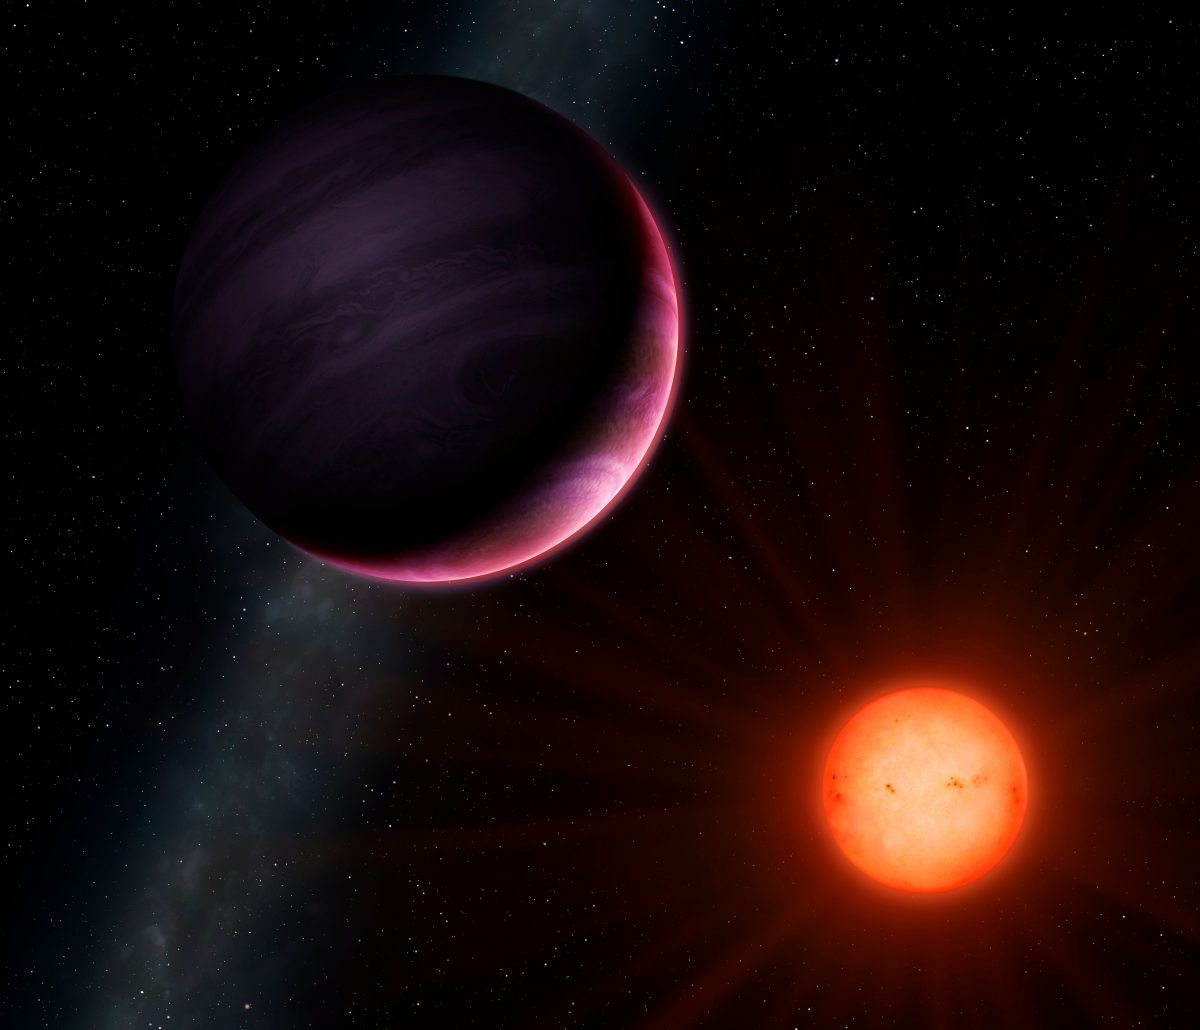 Rappresentazione artistica di un pianeta in orbita attorno ad una nana rossa